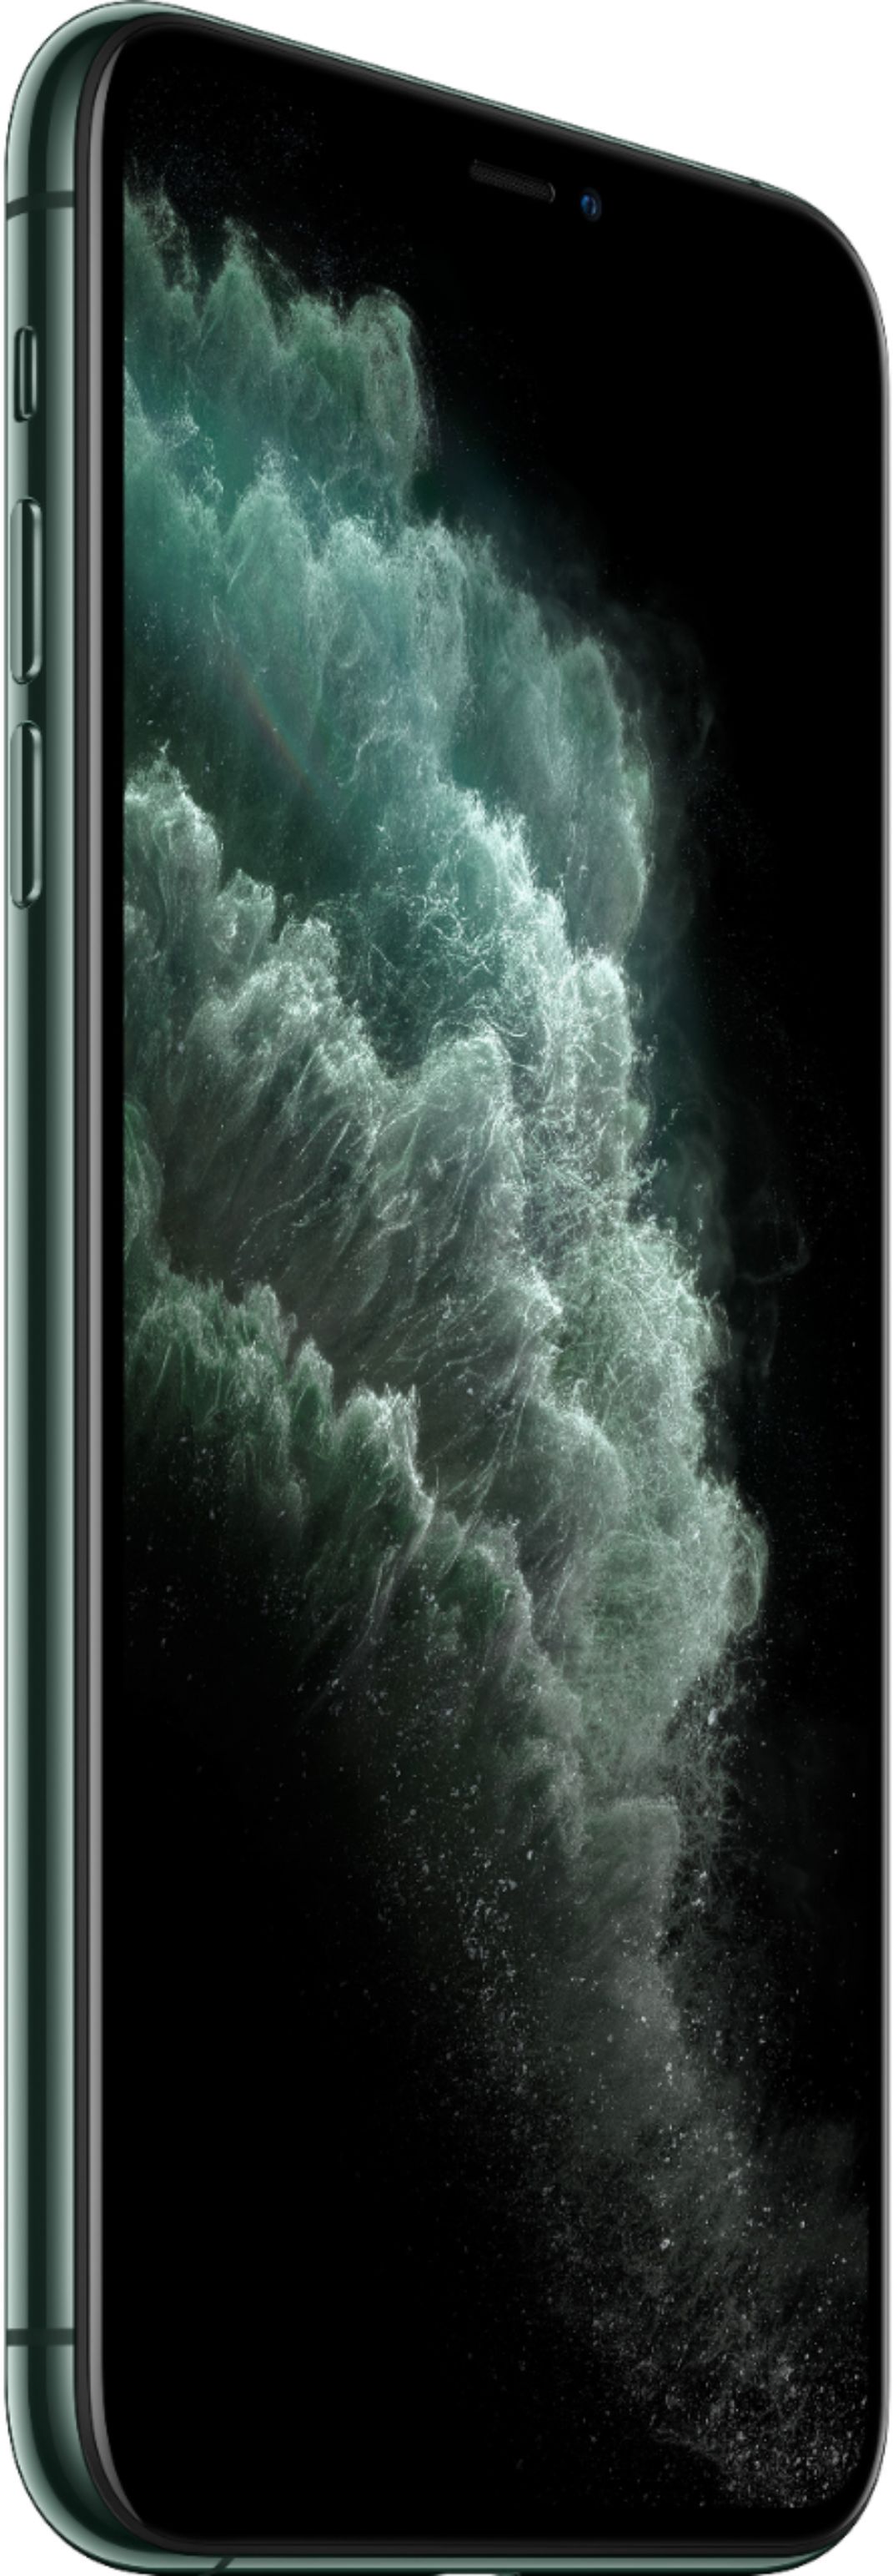 Apple iPhone 11 Pro Max 64GB Midnight Green (Verizon) MWH22LL/A 